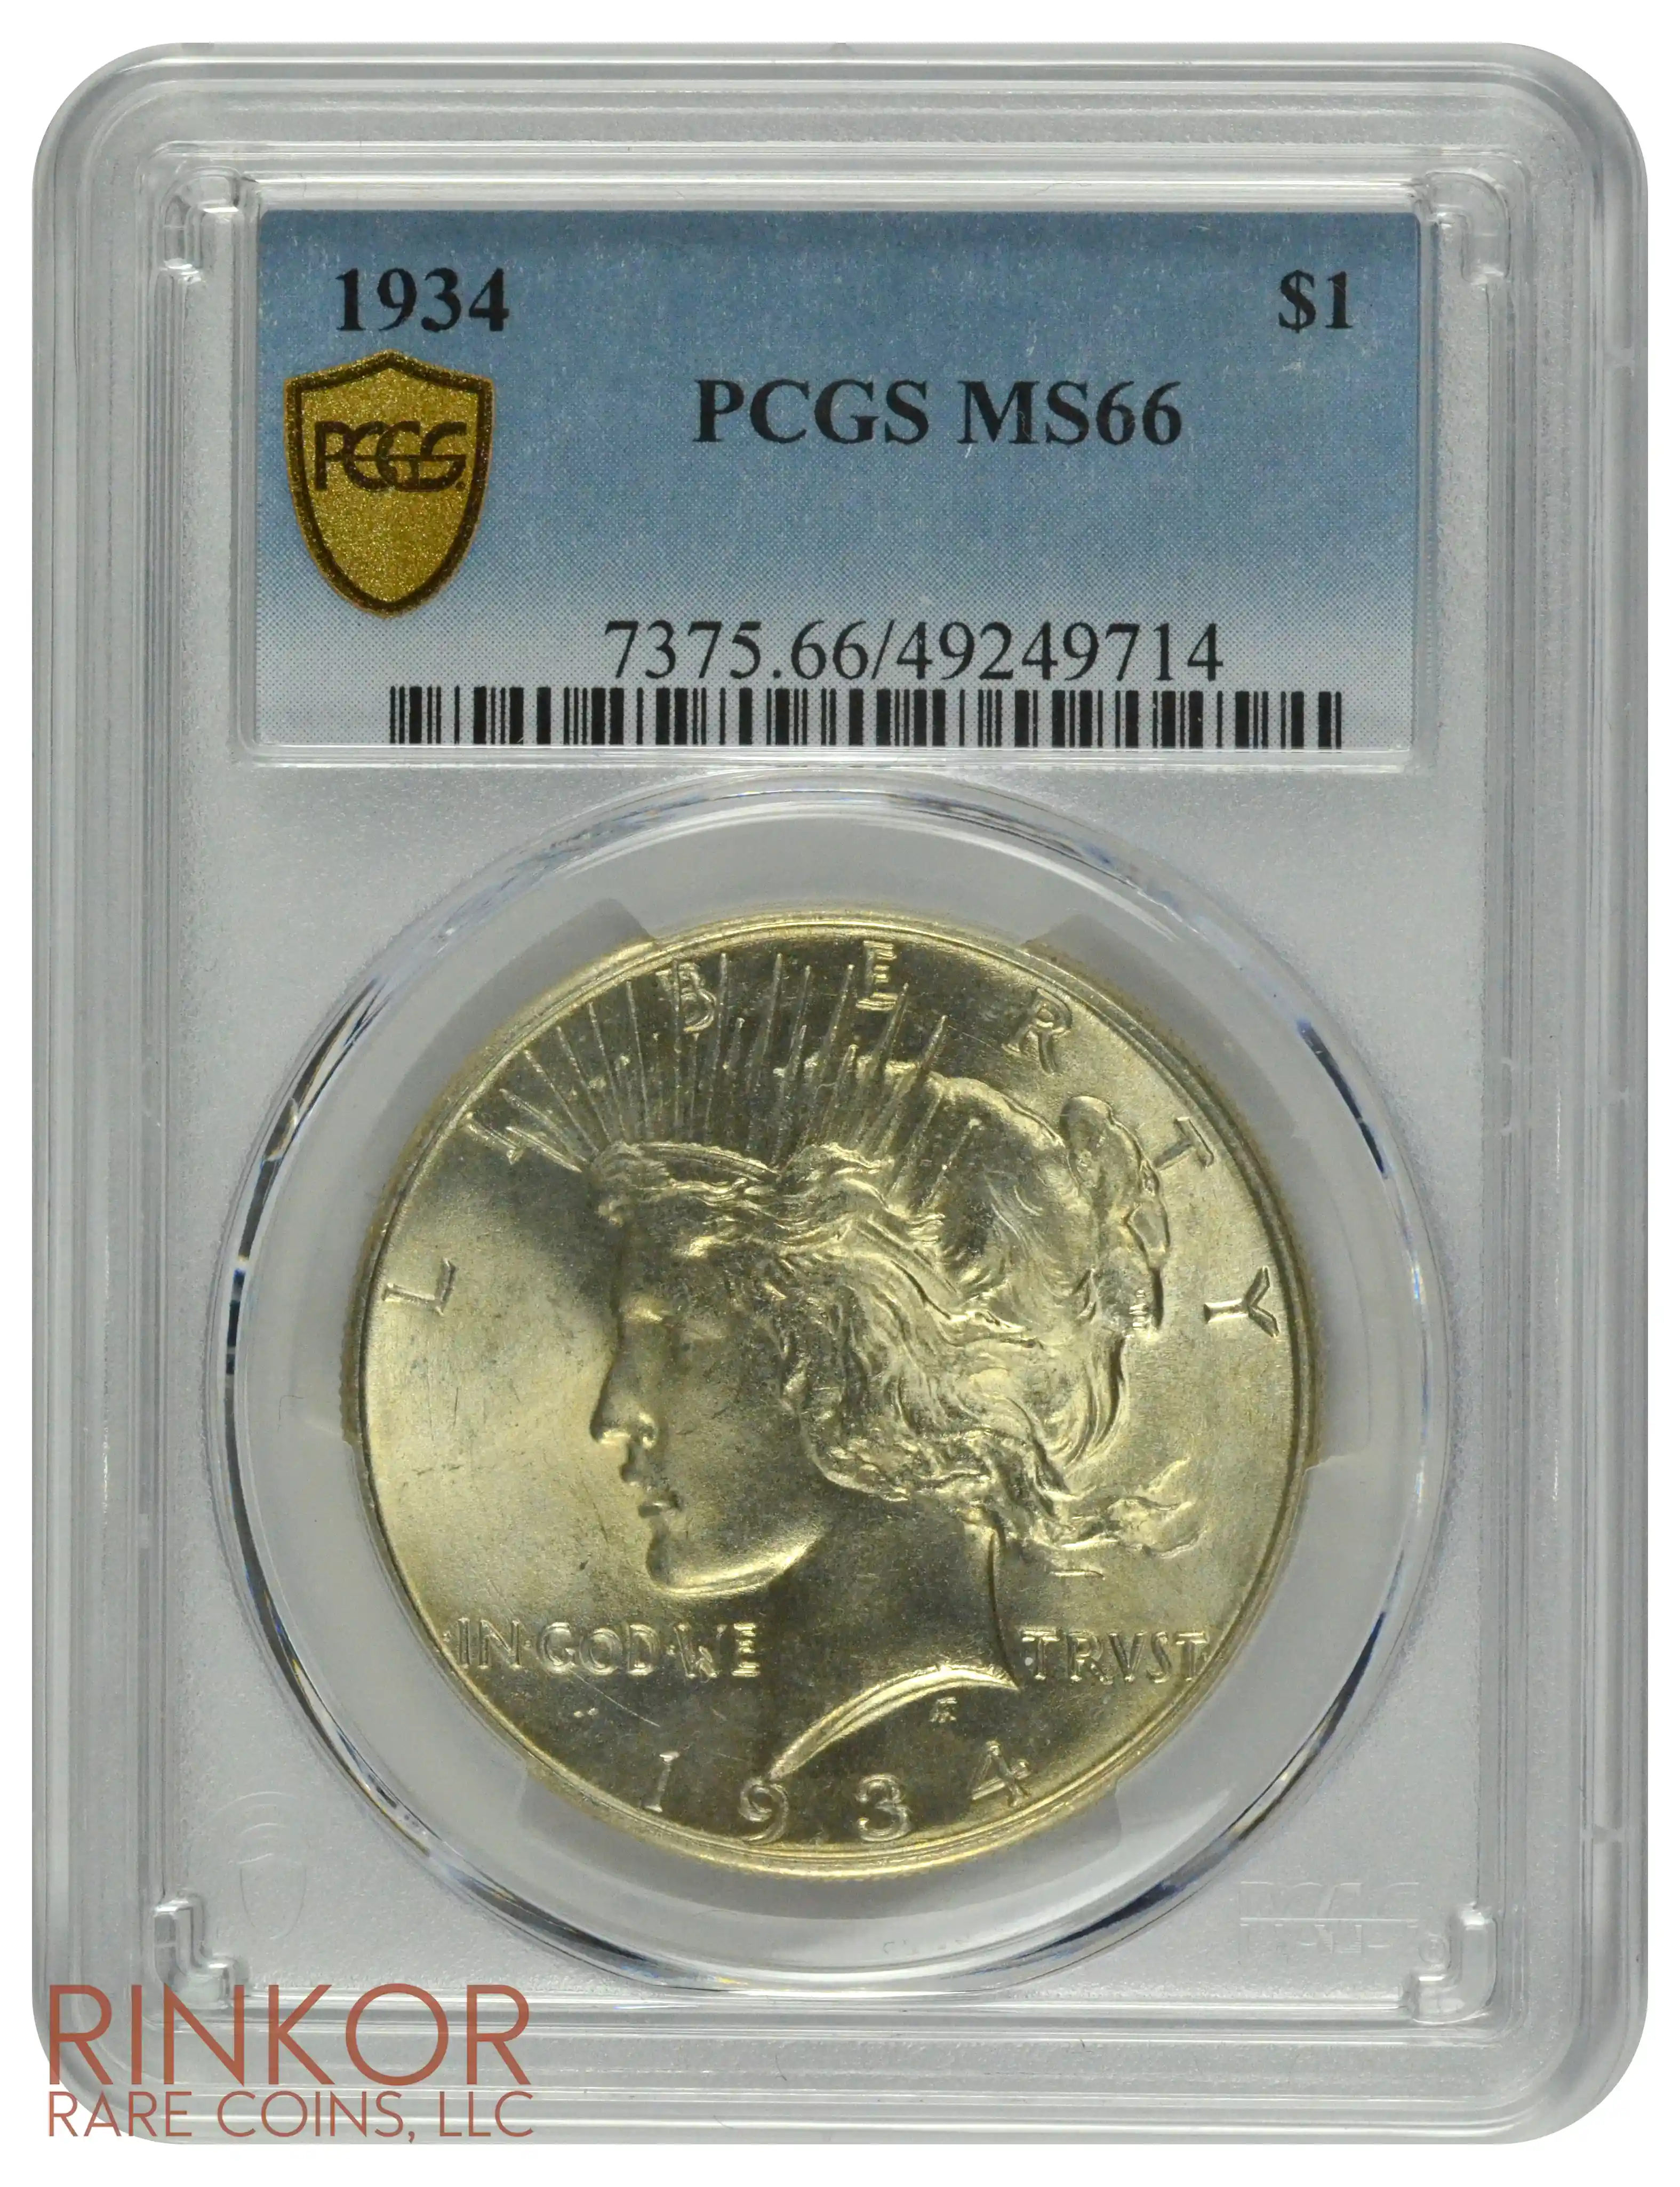 1934 $1 PCGS MS 66